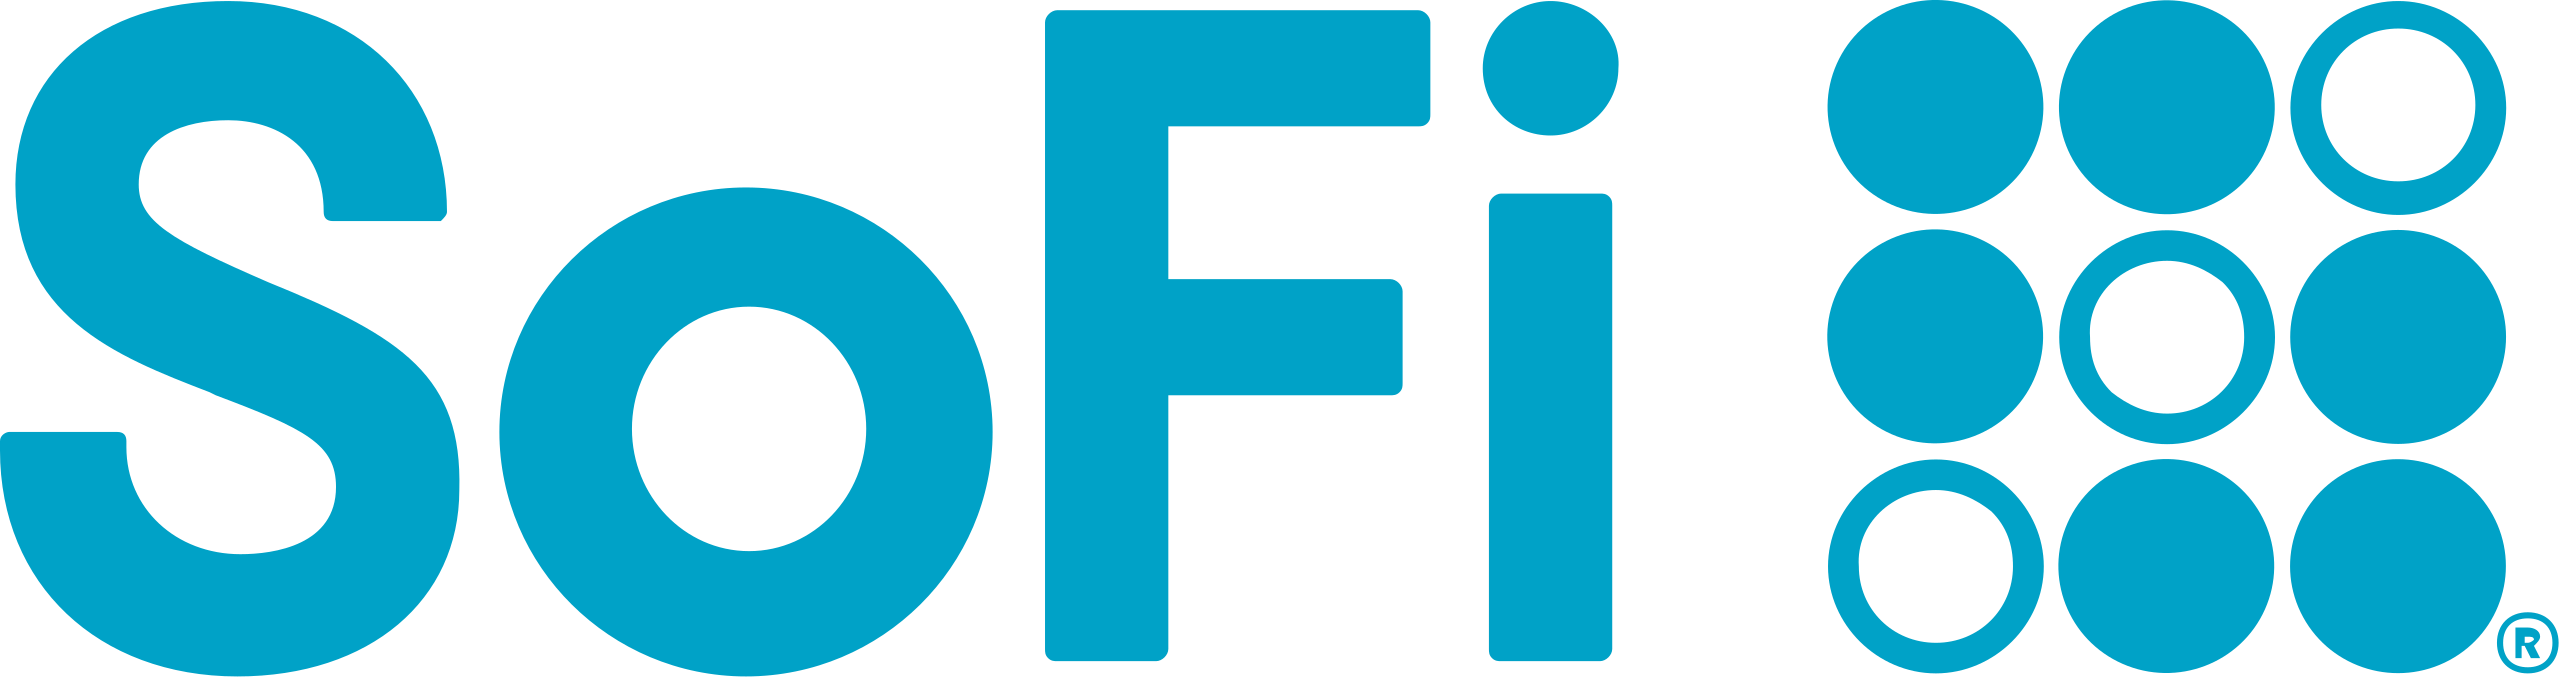 SoFi_logo.svg